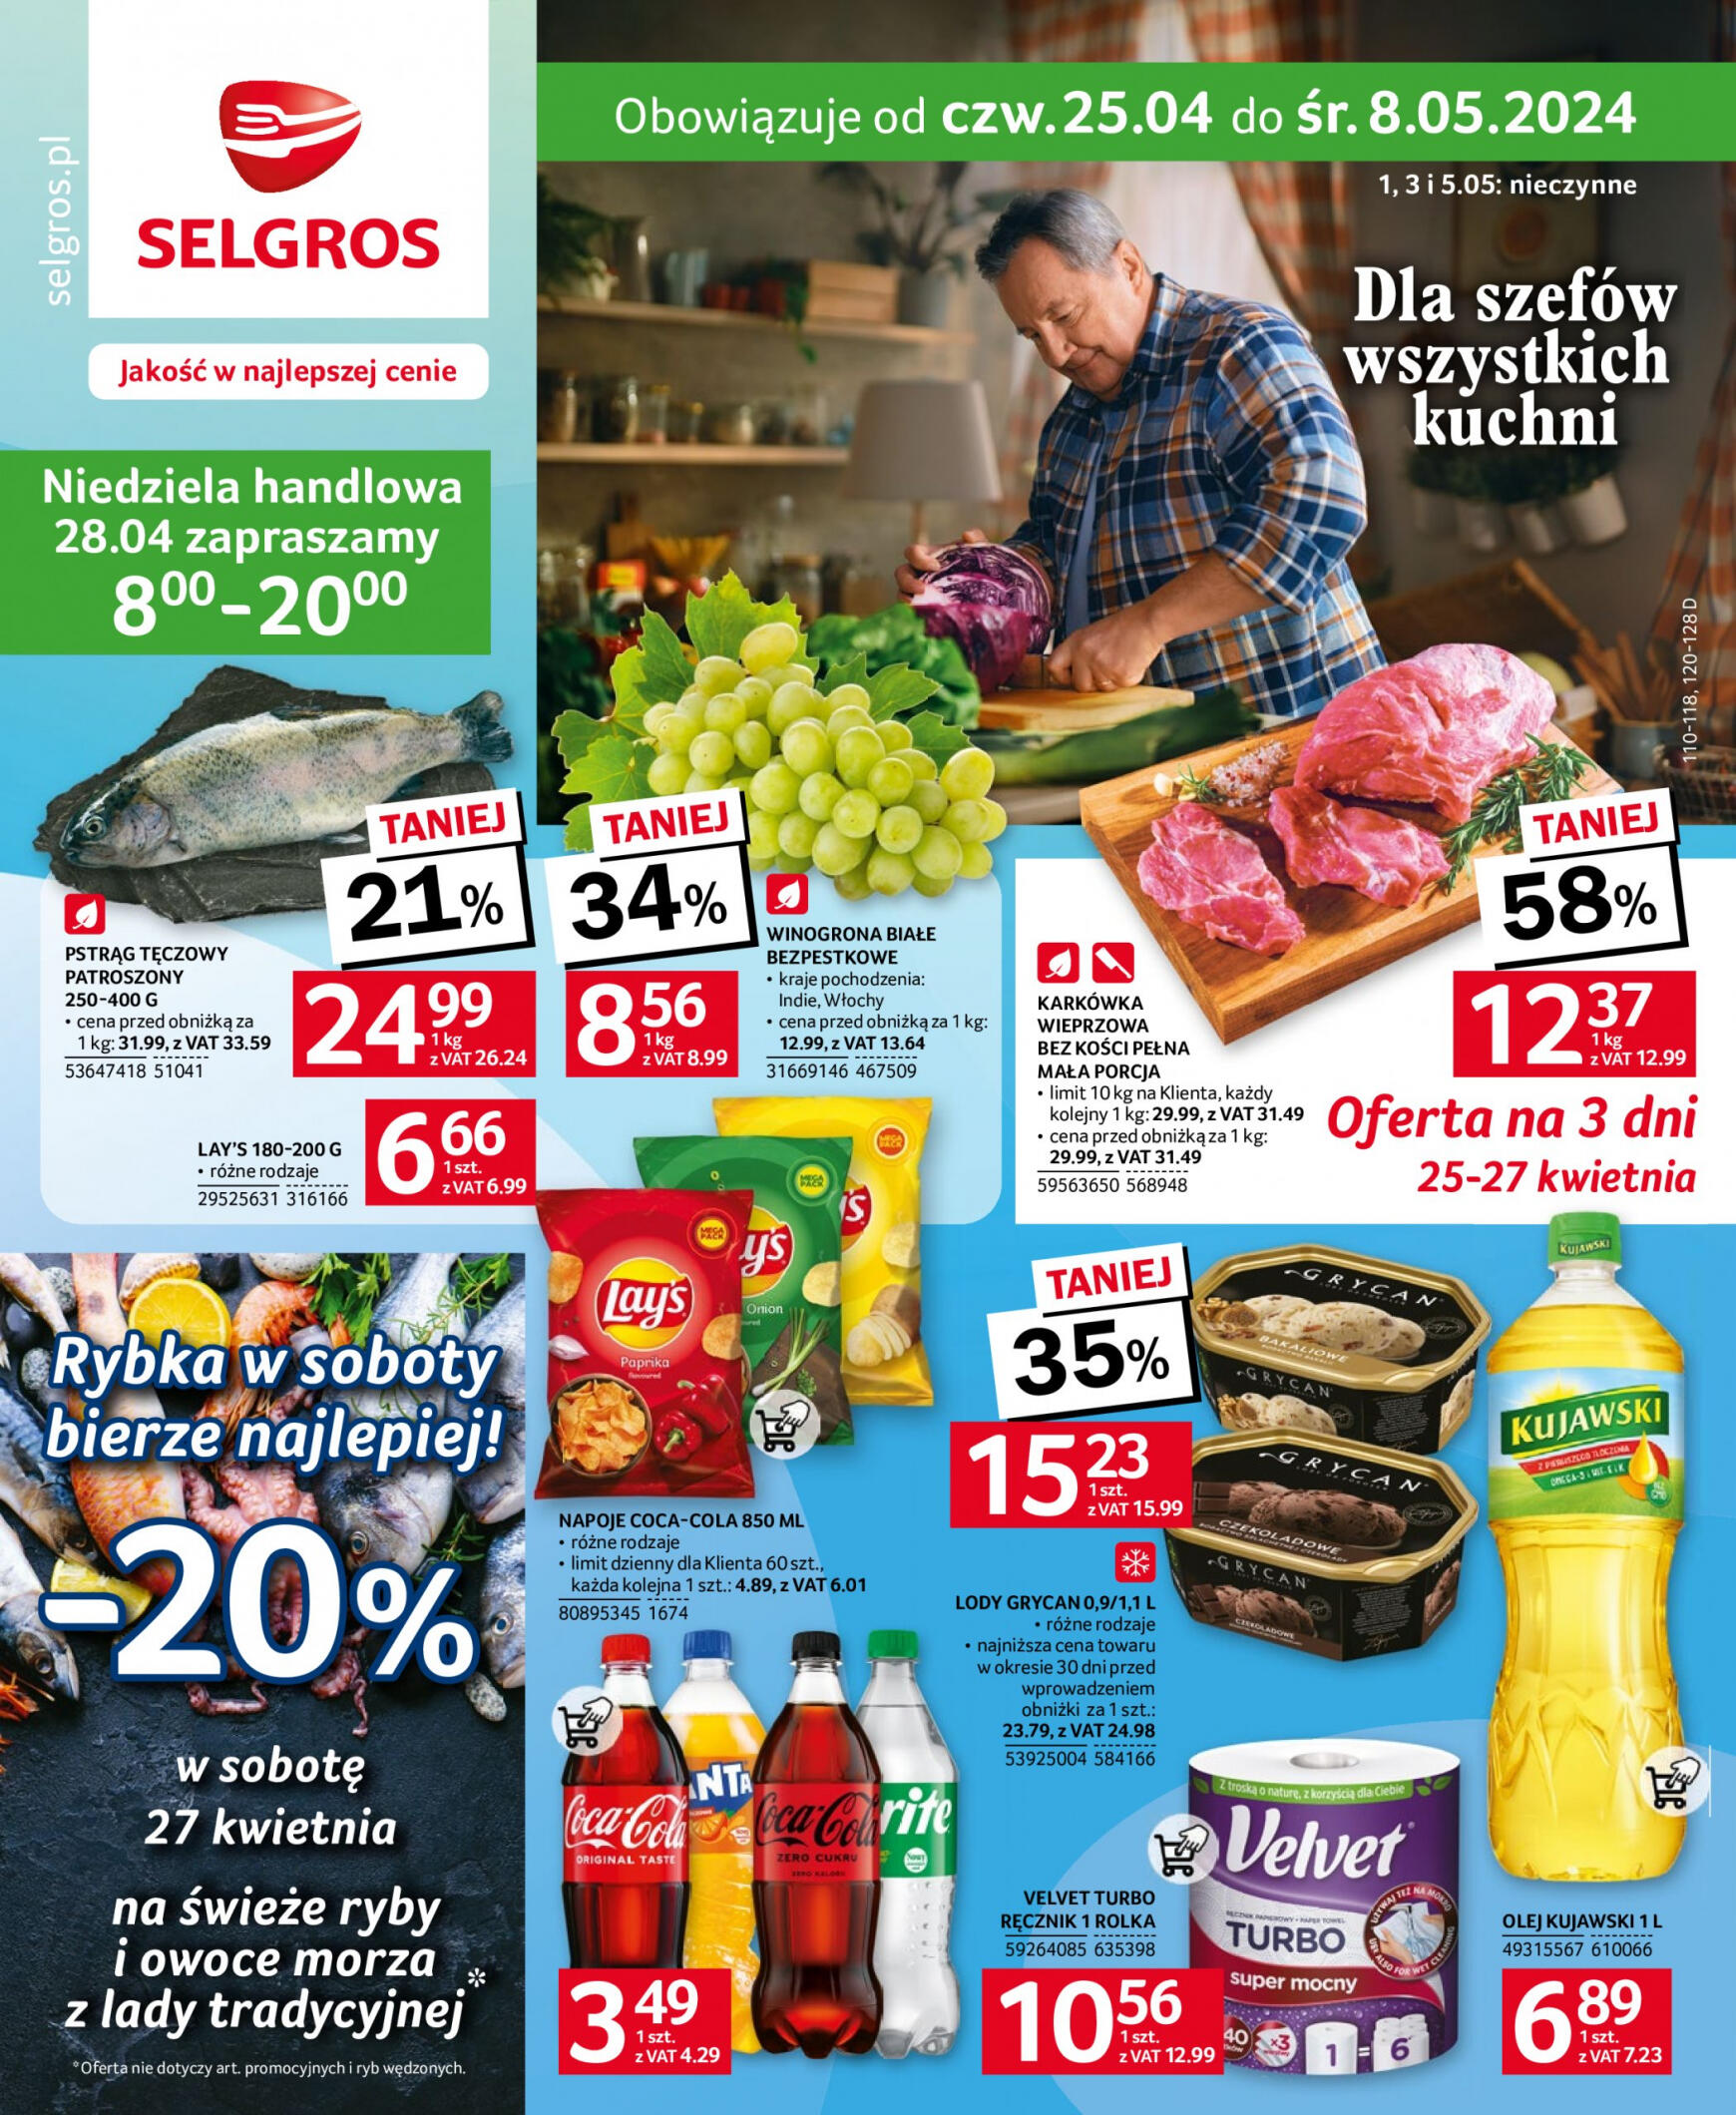 selgros - Selgros - Oferta spożywcza gazetka aktualna ważna od 25.04. - 05.05.